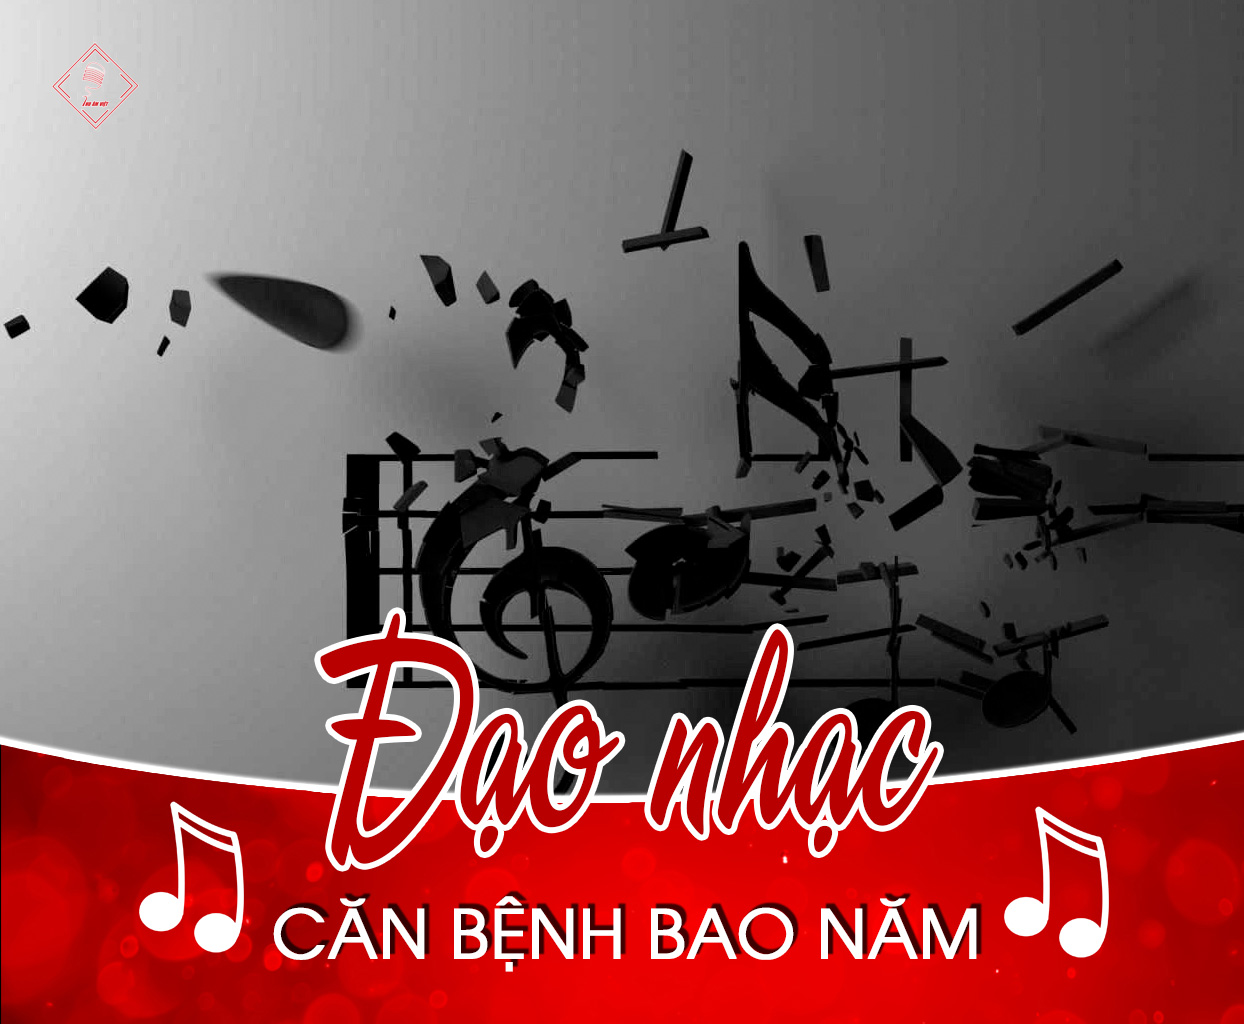 Đạo nhạc ở Việt Nam và căn bệnh bao năm vẫn không chữa được